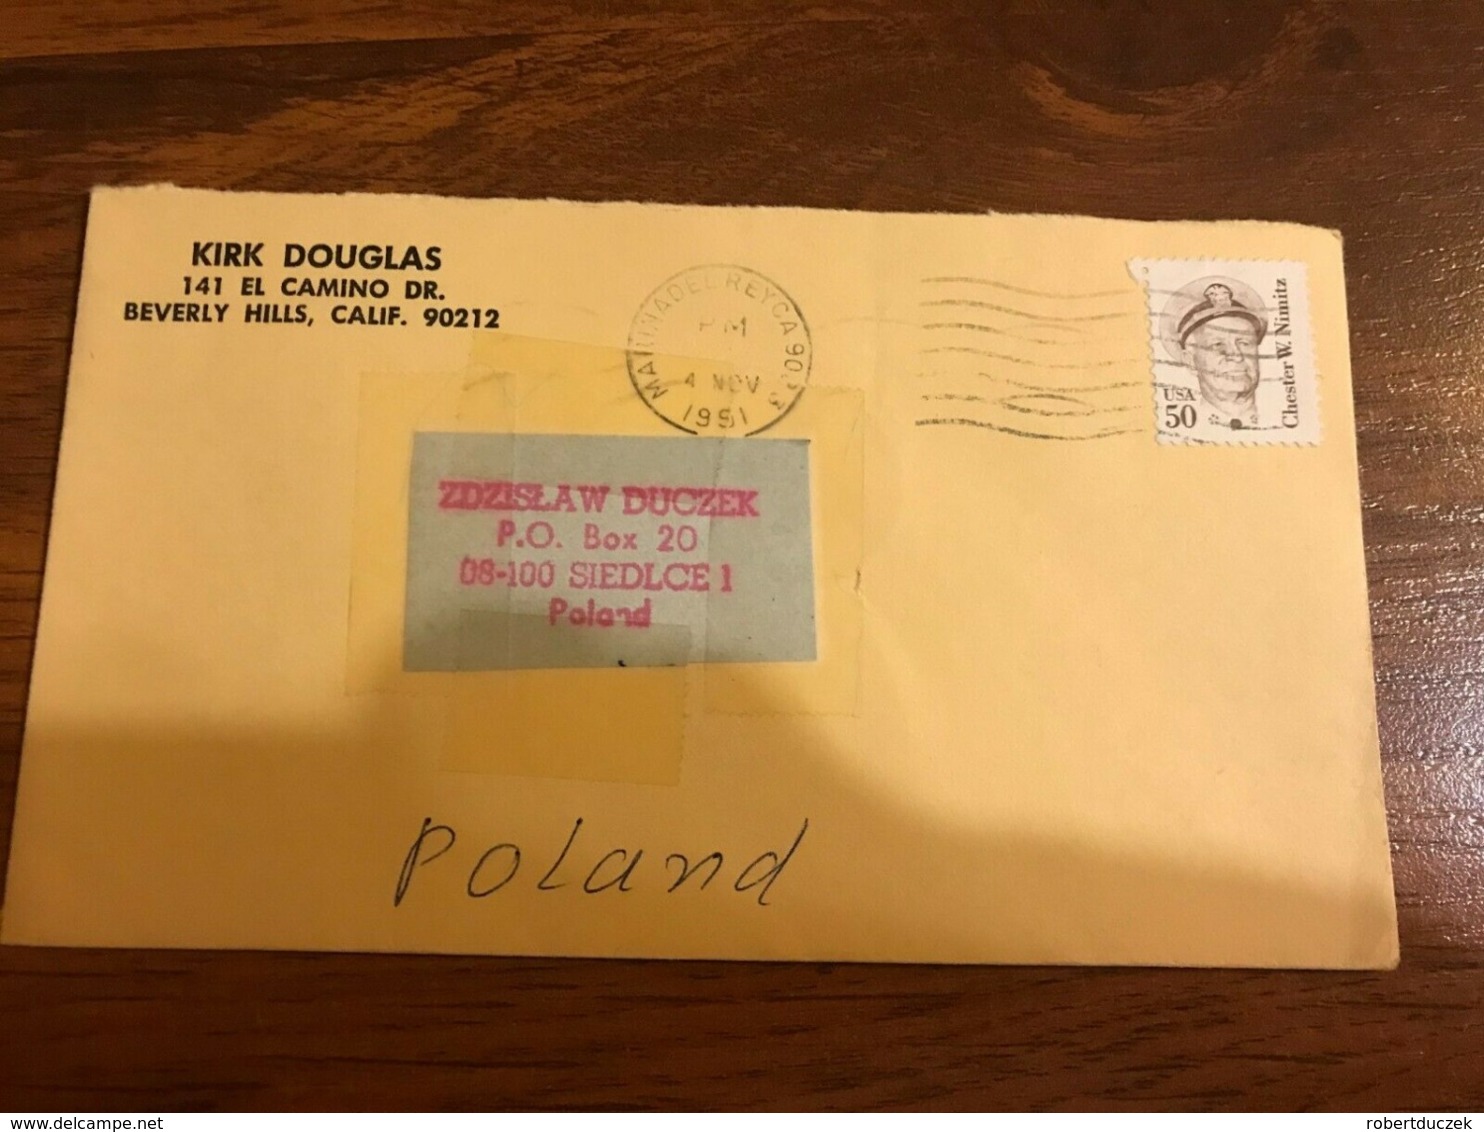 Kirk Douglas Photo Hand Signed Inscribed 10 X 15 Cm And Envelope - Fotos Dedicadas